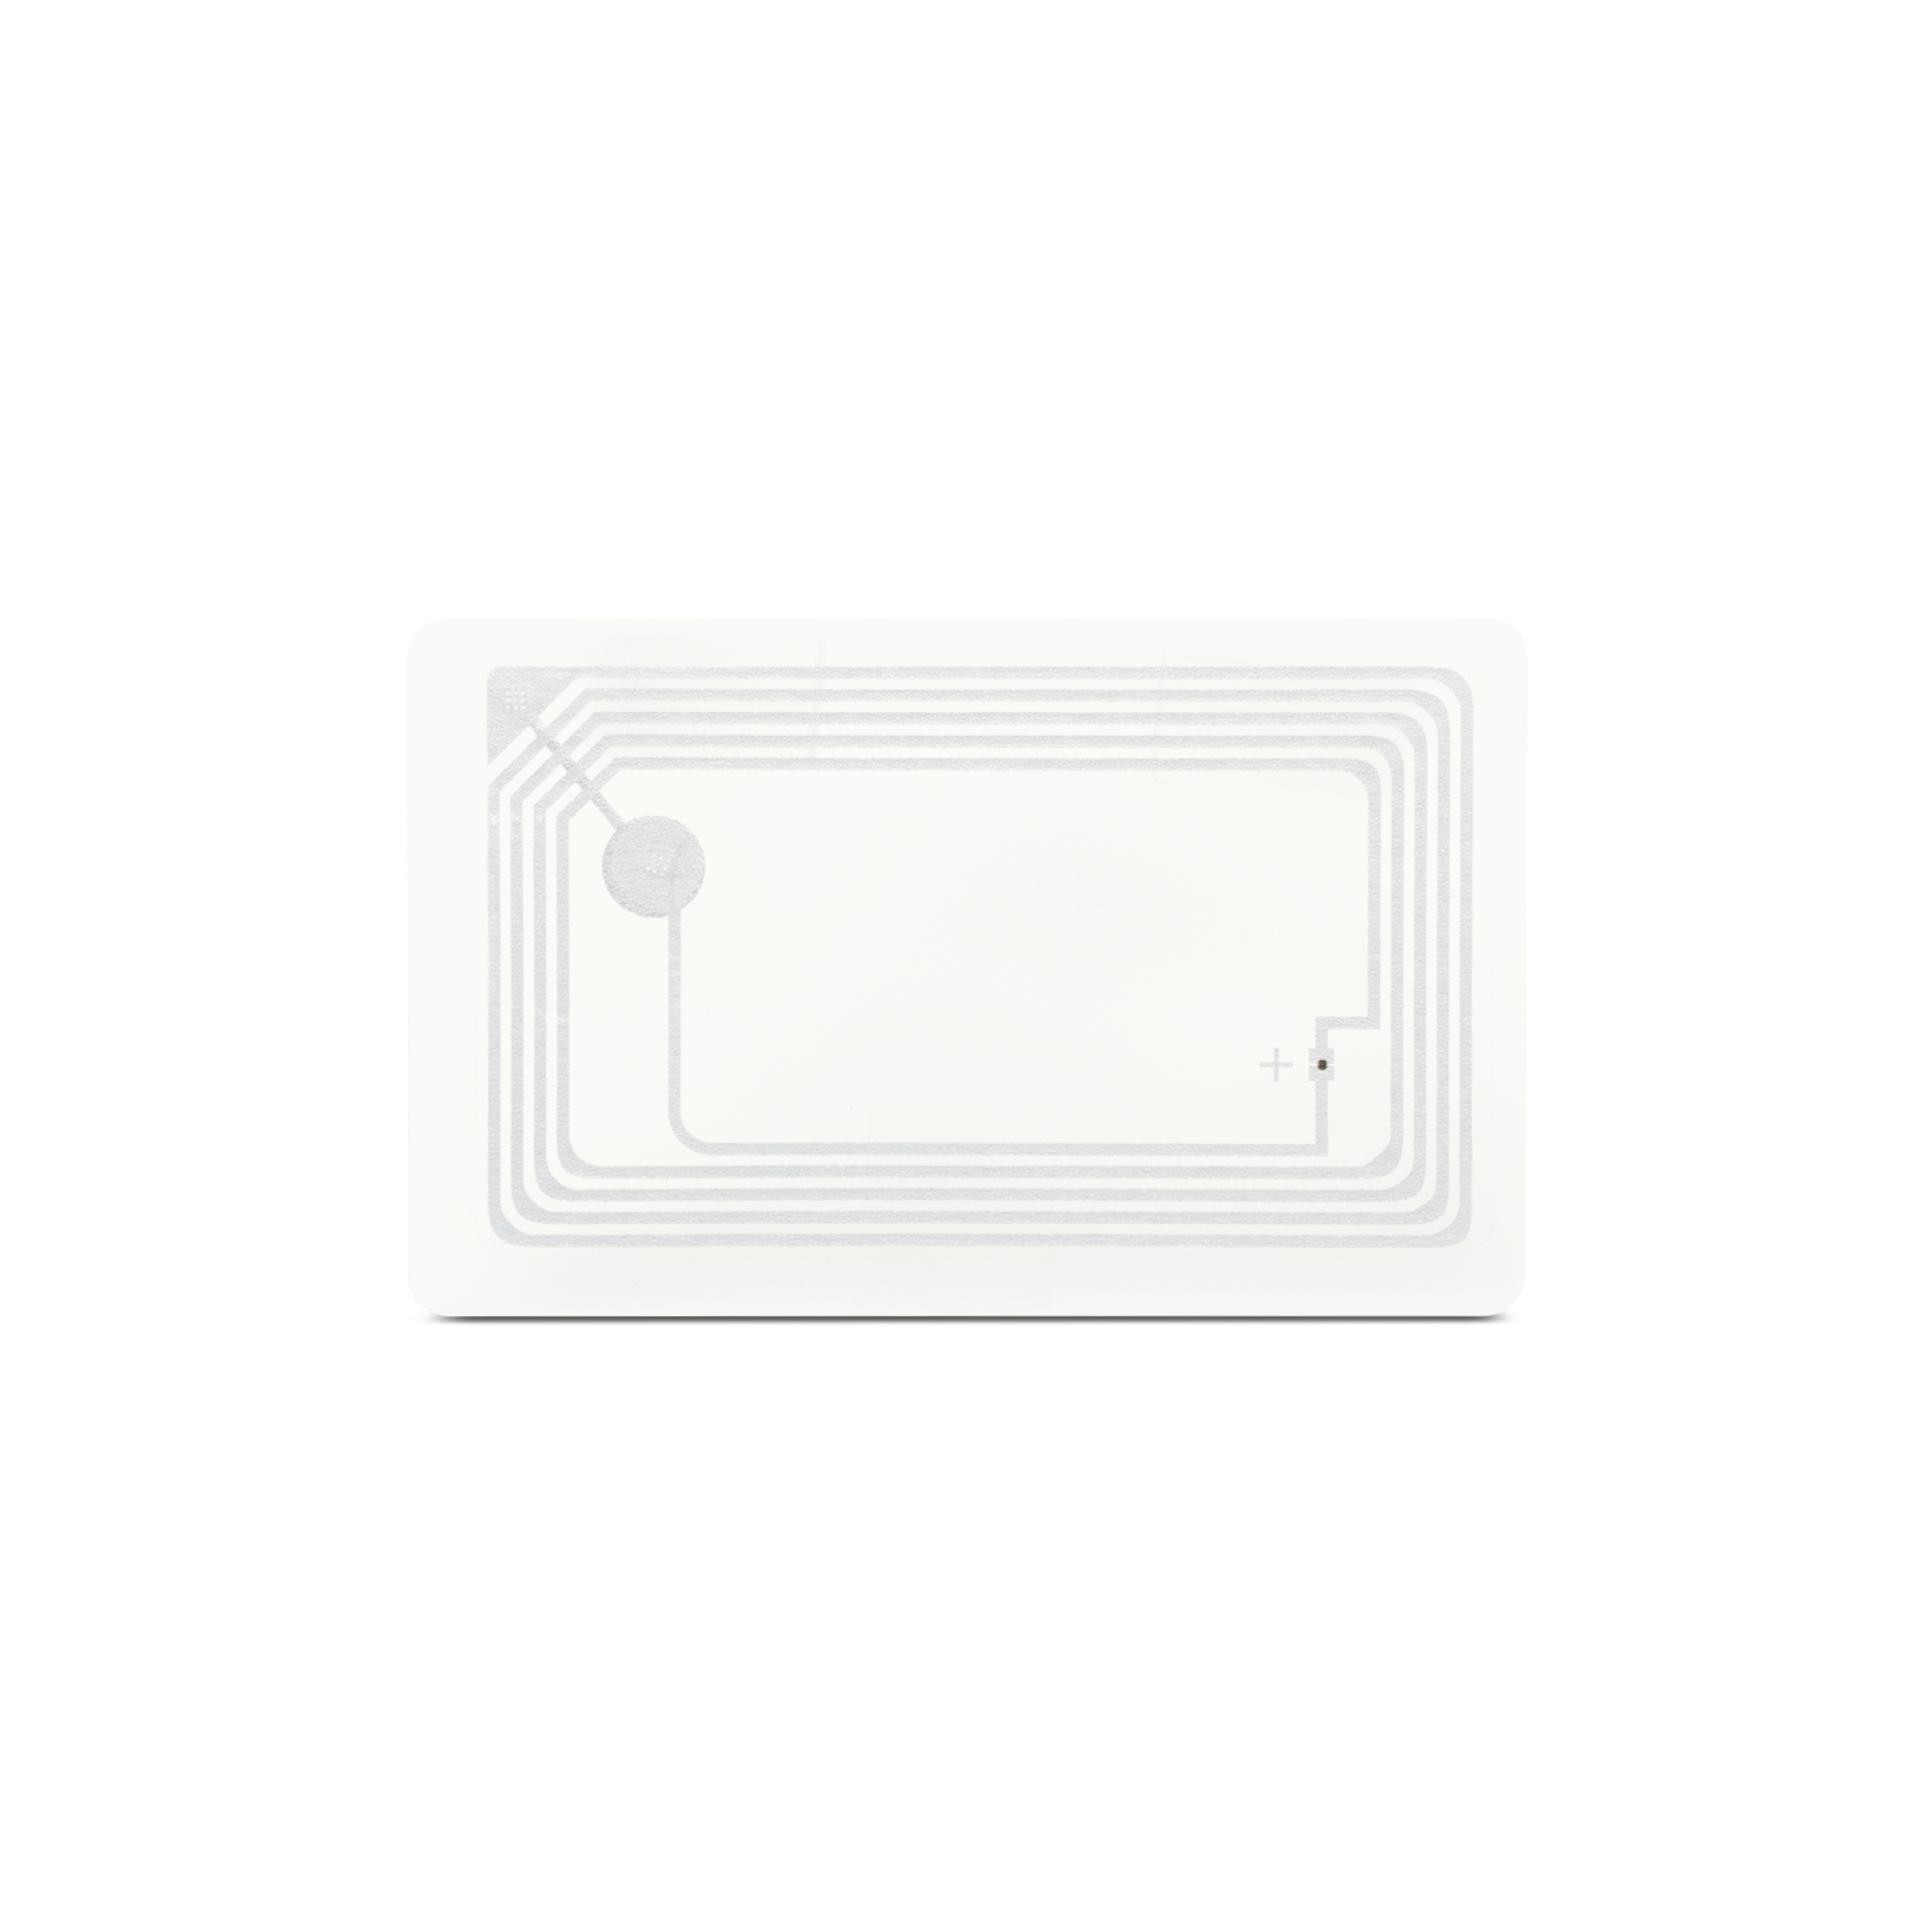 NFC Card PVC - 85,6 x 54 mm - NTAG216 - 924 Byte - transparent